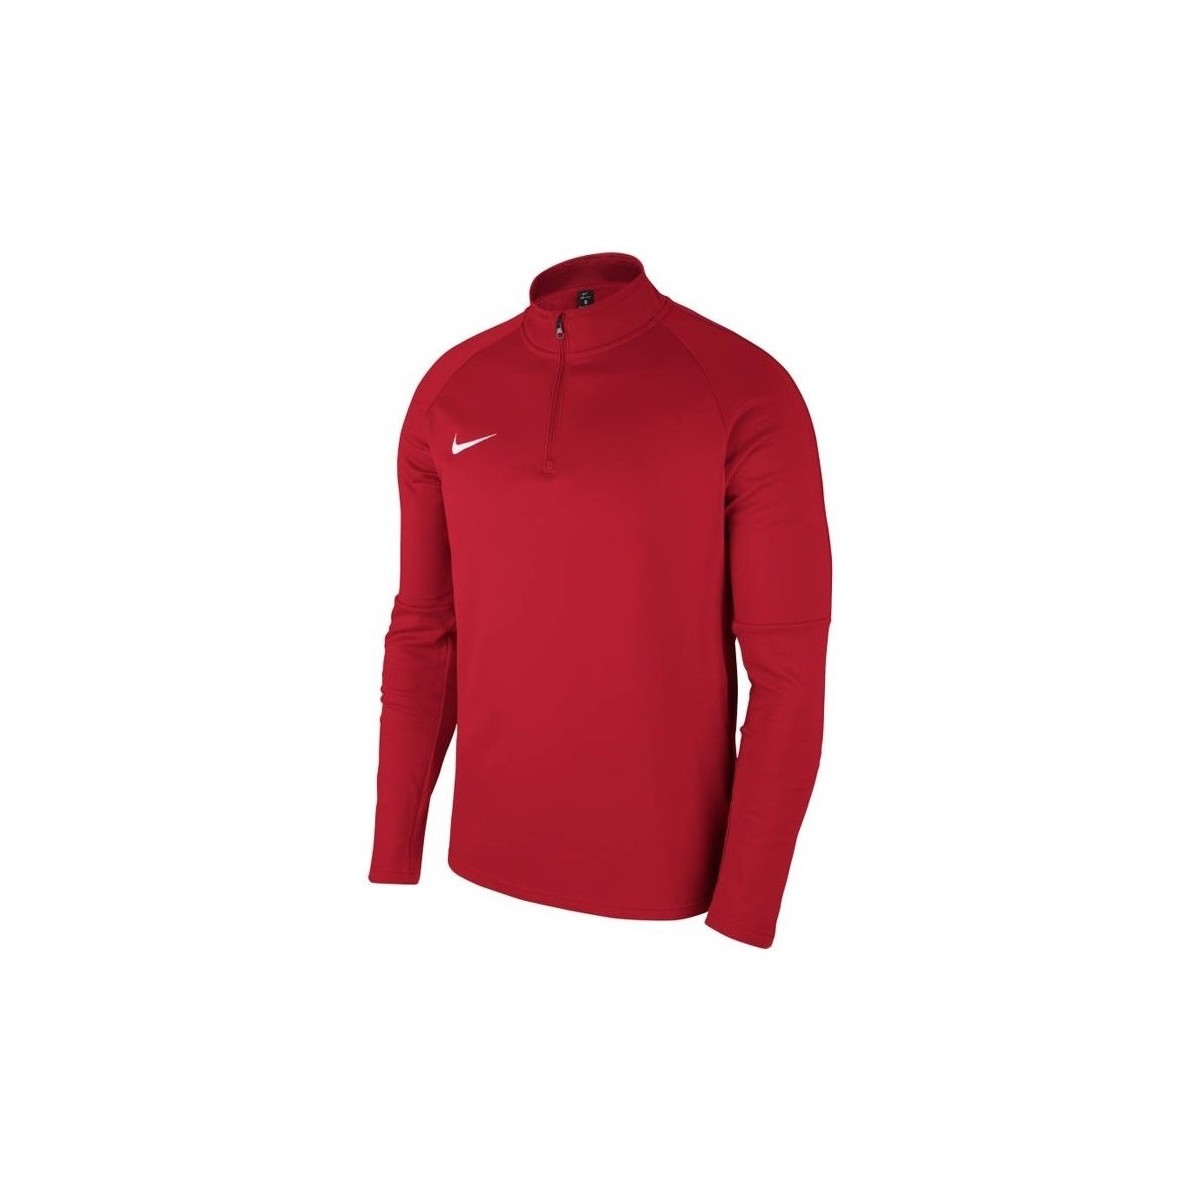 textil Pojkar Sweatshirts Nike JR Dry Academy 18 Dril Top Bordeaux